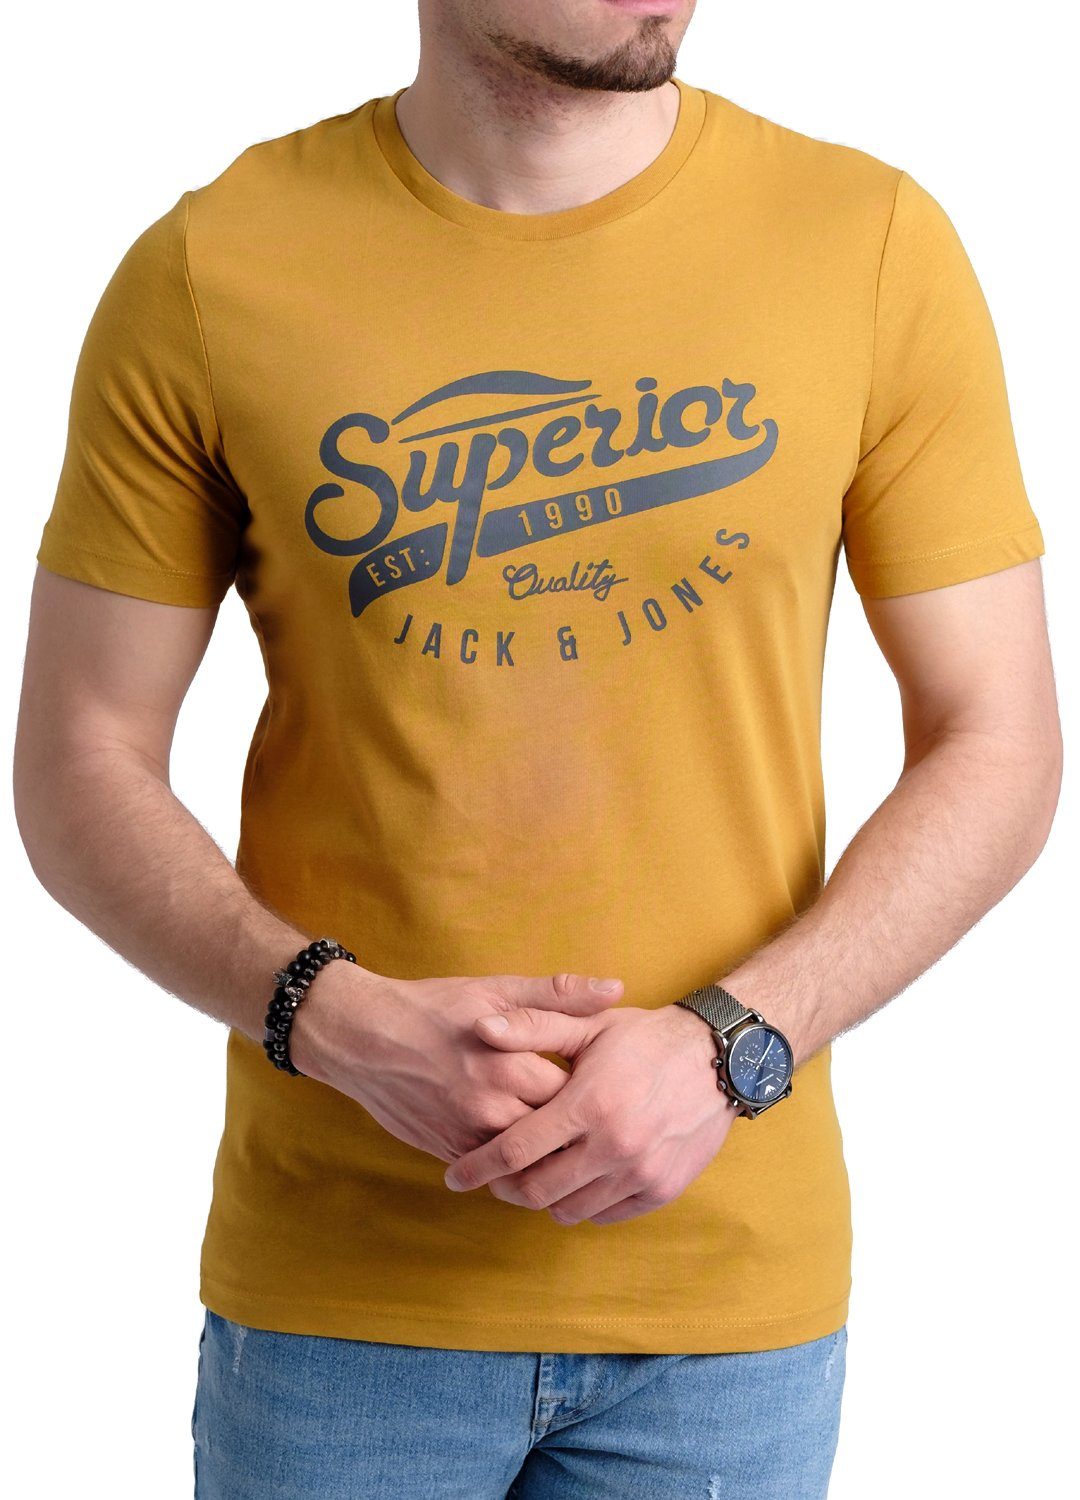 Jack Baumwolle aus T-Shirt & 10 Aufdruck mit Print-Shirt Jones OPT